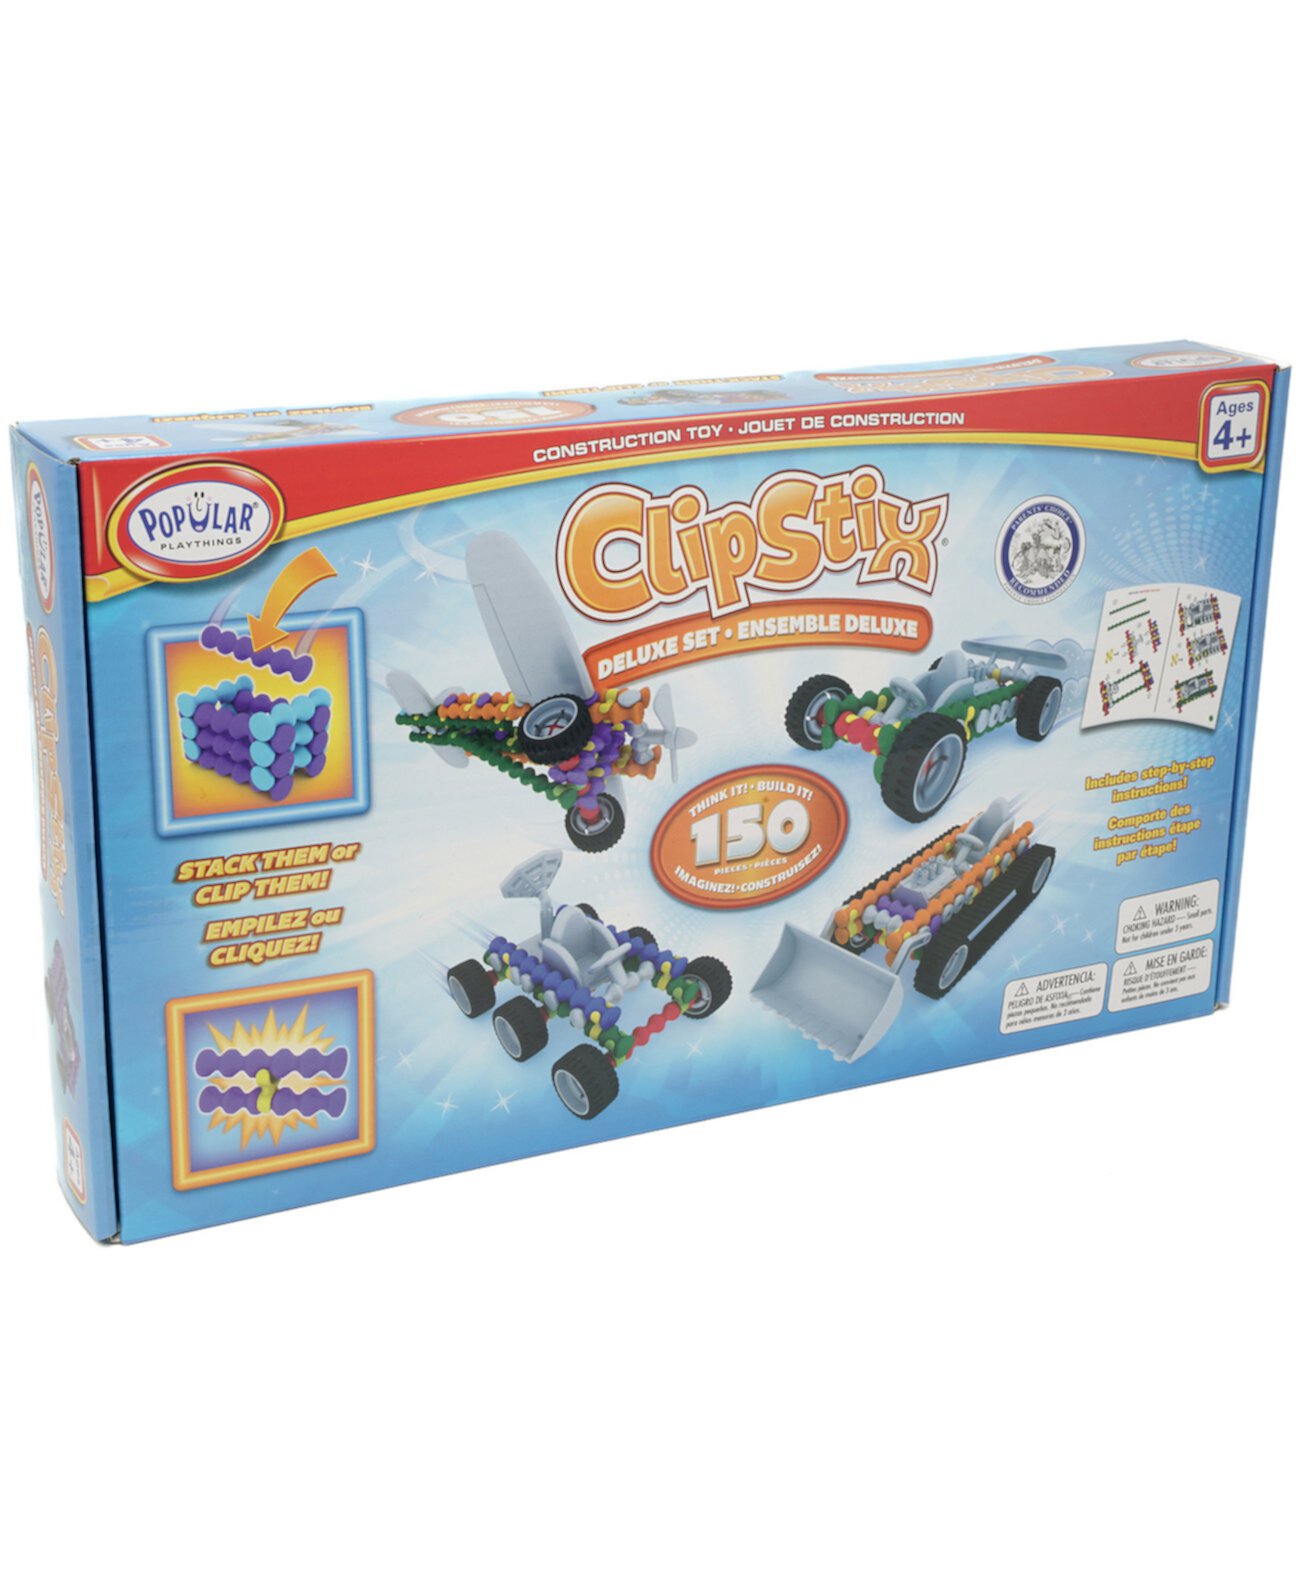 Строительный набор Clipstix Deluxe, 150 предметов Popular Playthings